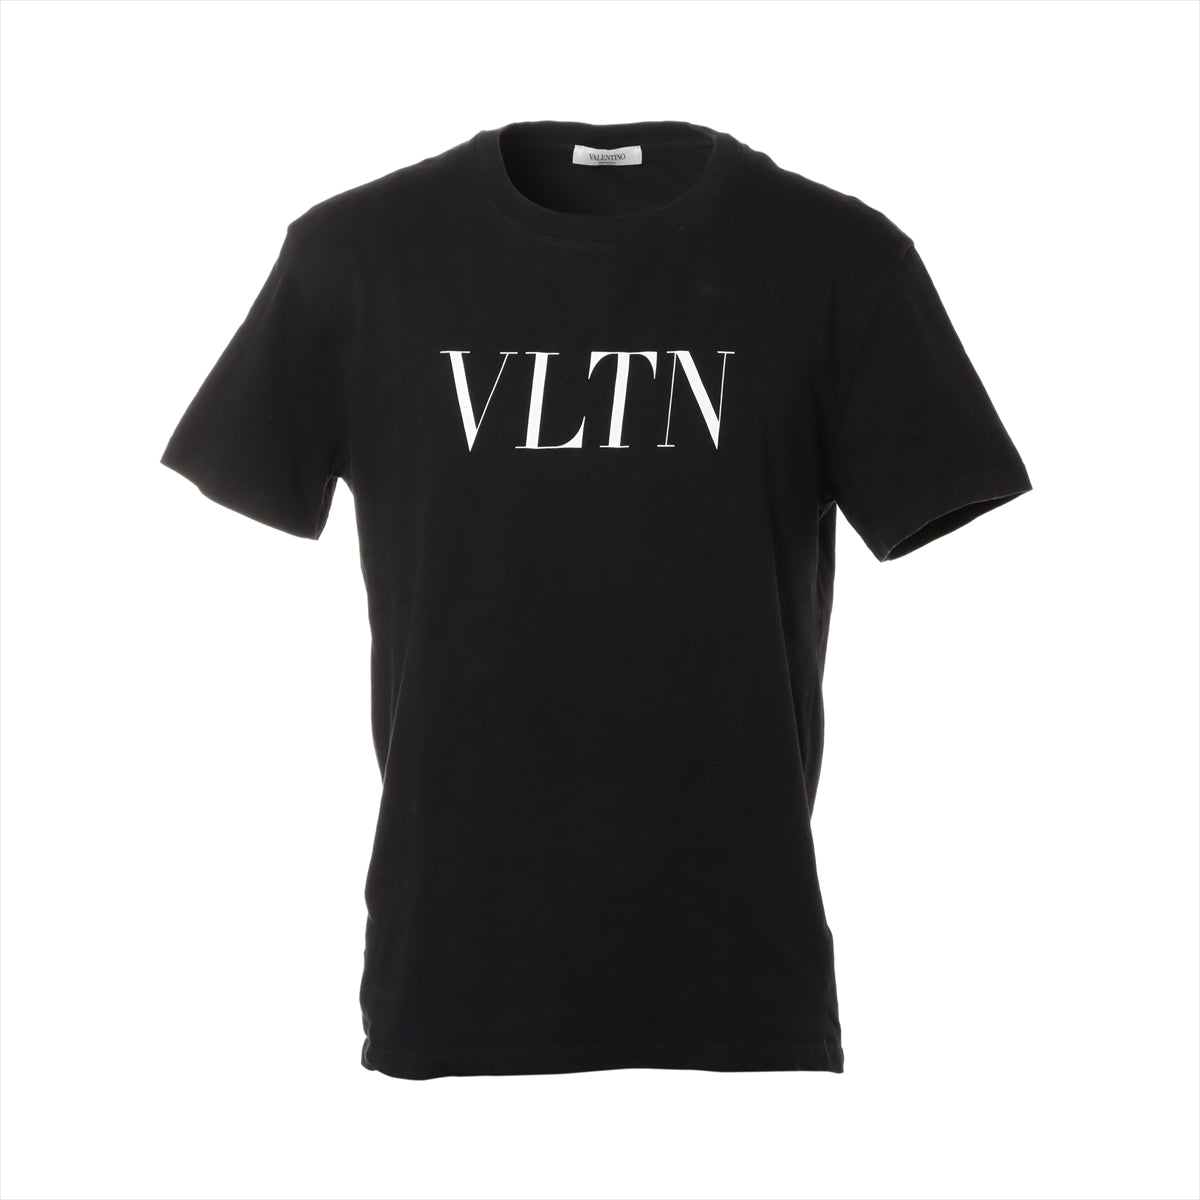 ヴァレンティノ コットン Tシャツ M メンズ ブラック